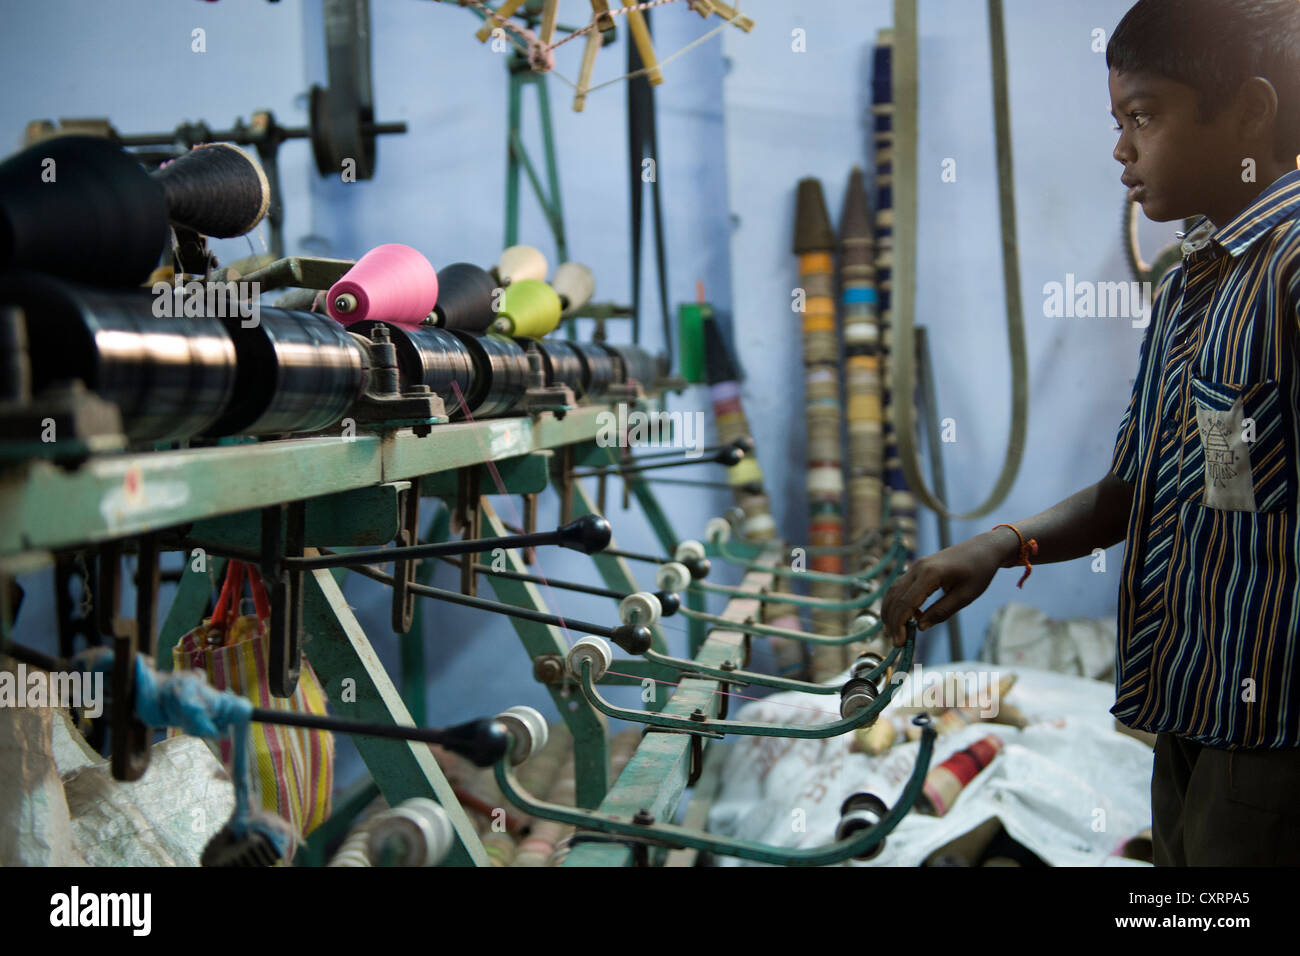 Kind Arbeiter, 11 Jahre, bedienen von Maschinen in einem Moskito-Netz Werk Karur, Tamil Nadu, Südindien, Indien, Asien Stockfoto